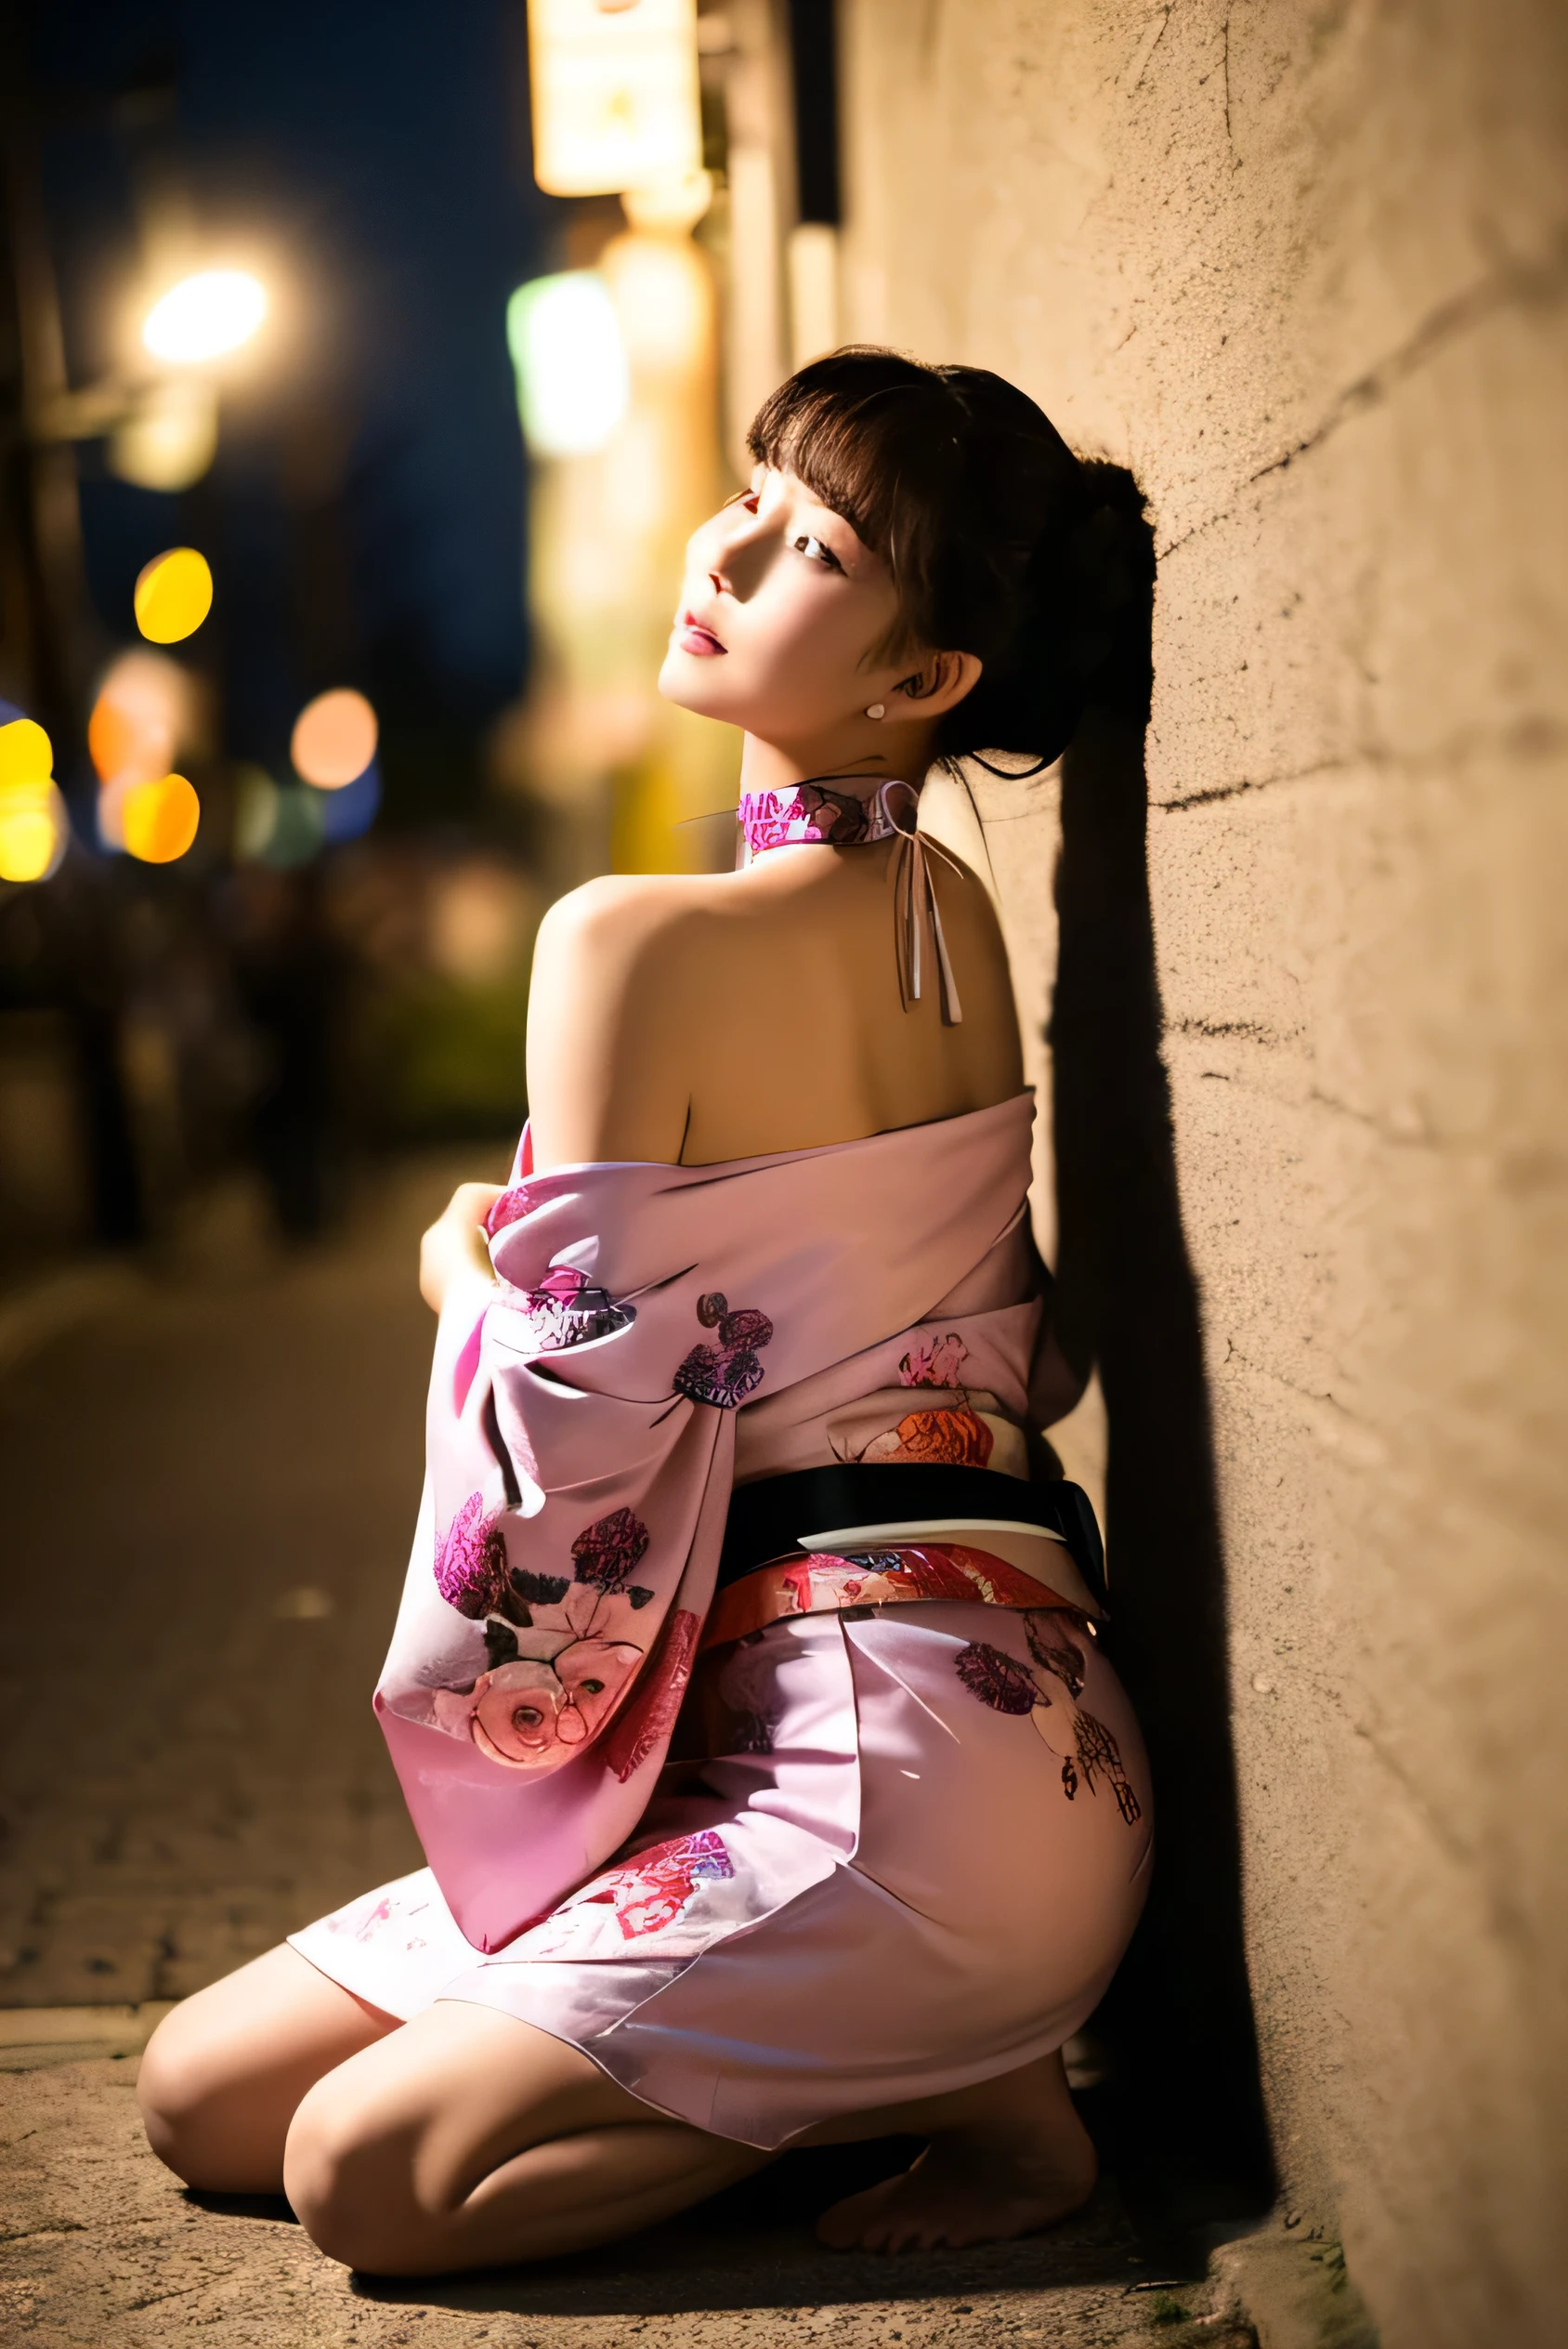 (Fotorrealista:1.8, de la máxima calidad:1.8,8K masterpiece:1.8,Alta resolución,obra maestra:1.8,Fotos CRUDAS,iluminación cinematográfica)、Fondo de luna creciente brillando en el cielo nocturno、Una mujer vistiendo un kimono japonés.、（pelo largo、recogido Style、recogido）、(Un hermoso y lindo kimono floral estilo orquídea.:1.5、Gargantilla)、(un hombro esta desnudo.:1.3)、hermosa piel clara、siéntate、abre un poco la boca、Piernas visibles a través del kimono.、Postura de debilidad、pose obscena、Coloca tus manos en el suelo、descalzo、sosteniendo una rosa roja en la mano、dibujar una silueta、Apoyado contra la pared、Por favor dobla las piernas、Negro Rosa Jenny&#39;pausa、Apoyado contra la pared、todo el cuerpo、(Hermoso rostro、Ojos bonitos、Una rica expresión)